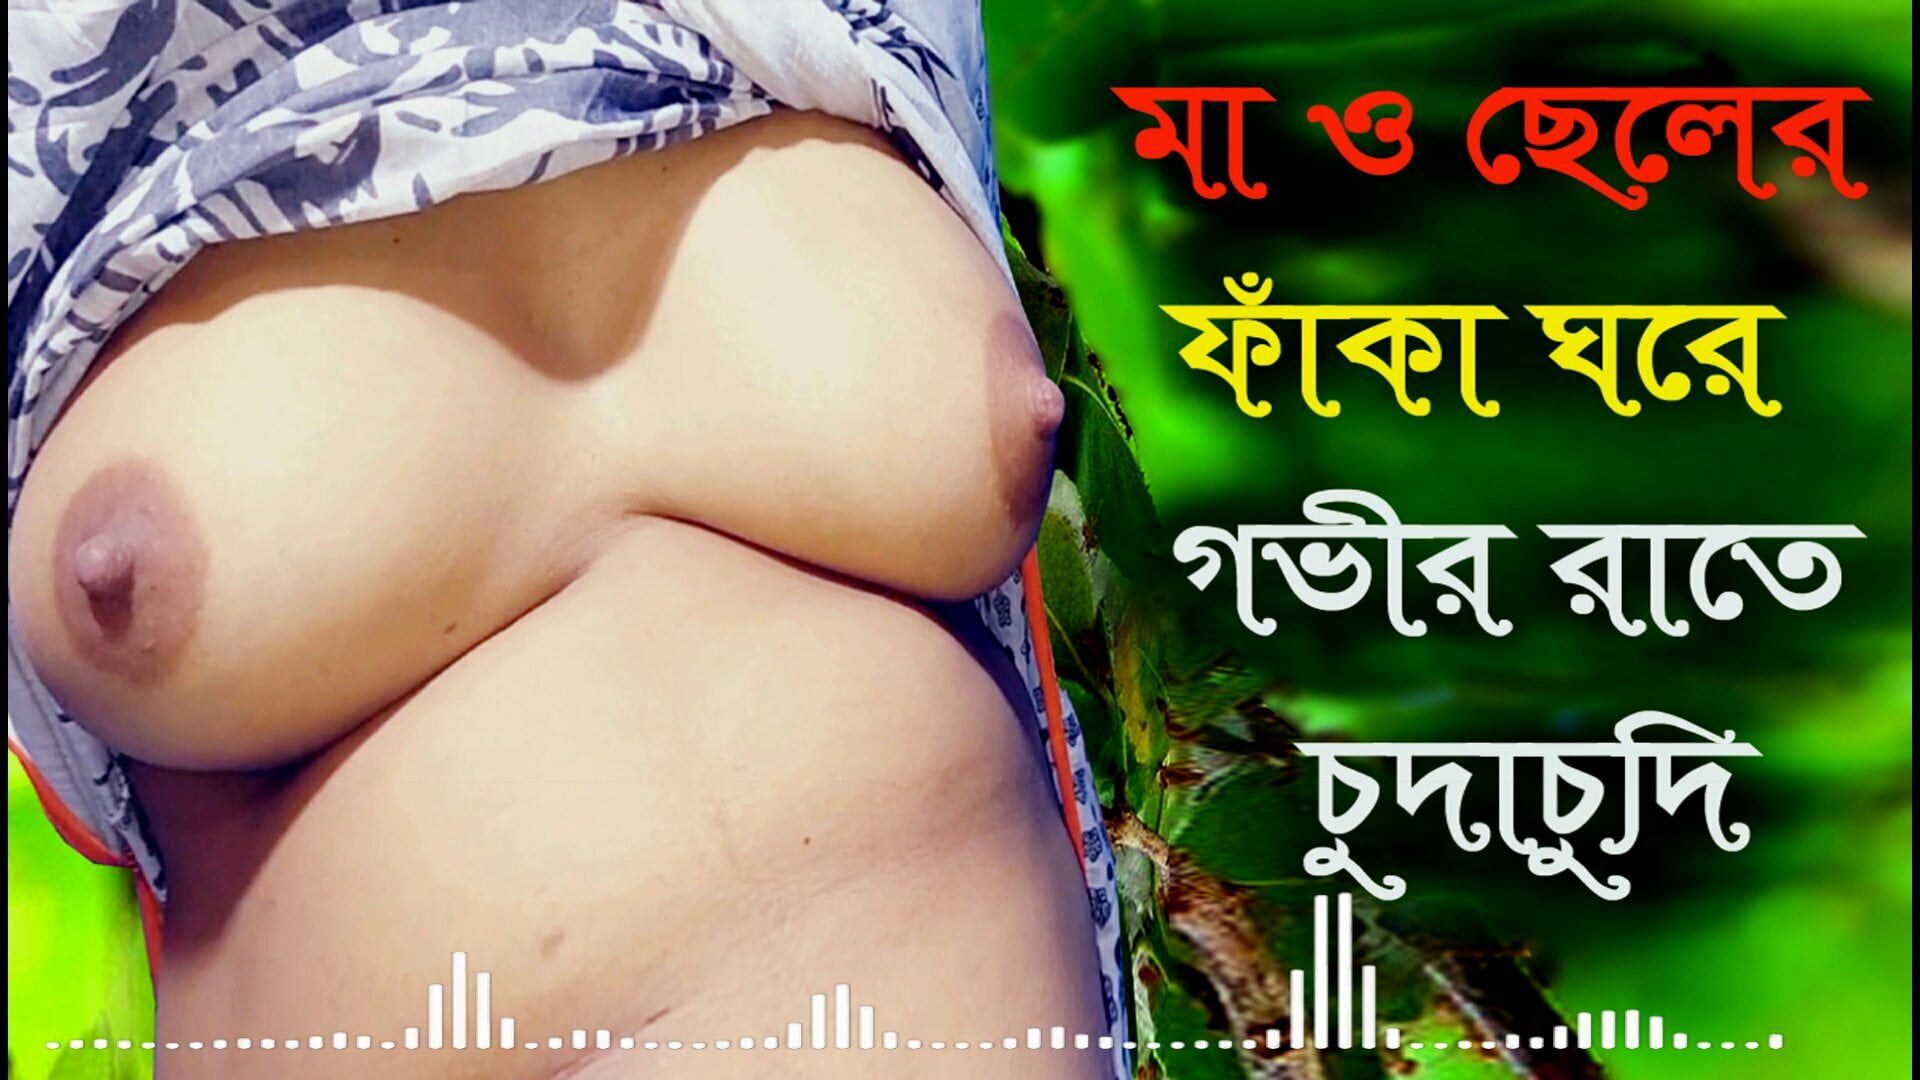 Sex story of bengali